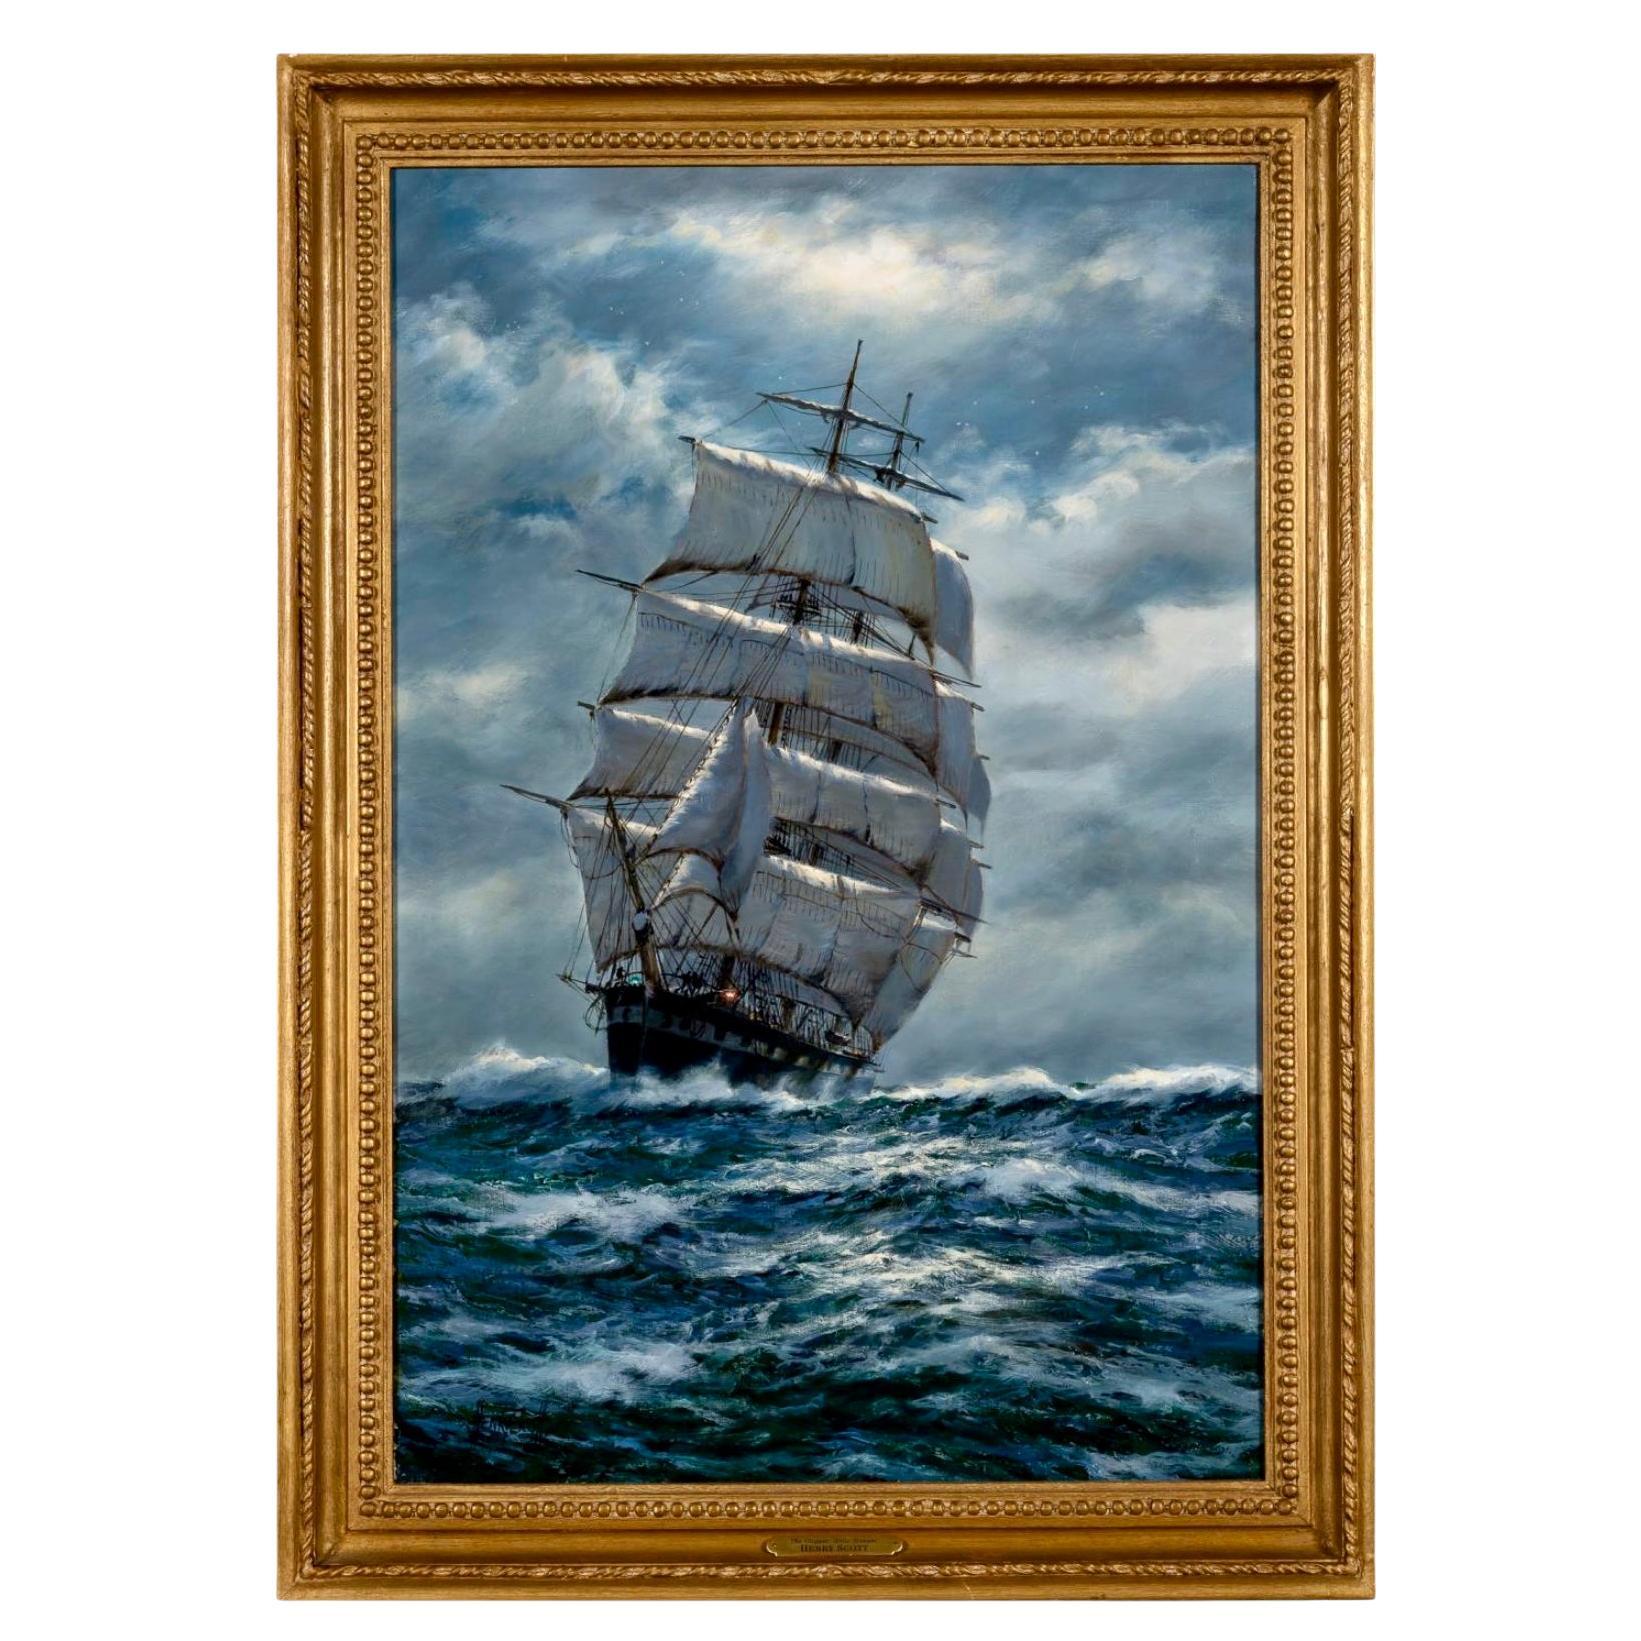 "Clipper at Full Sail Under Moonlight" by Henry Scott